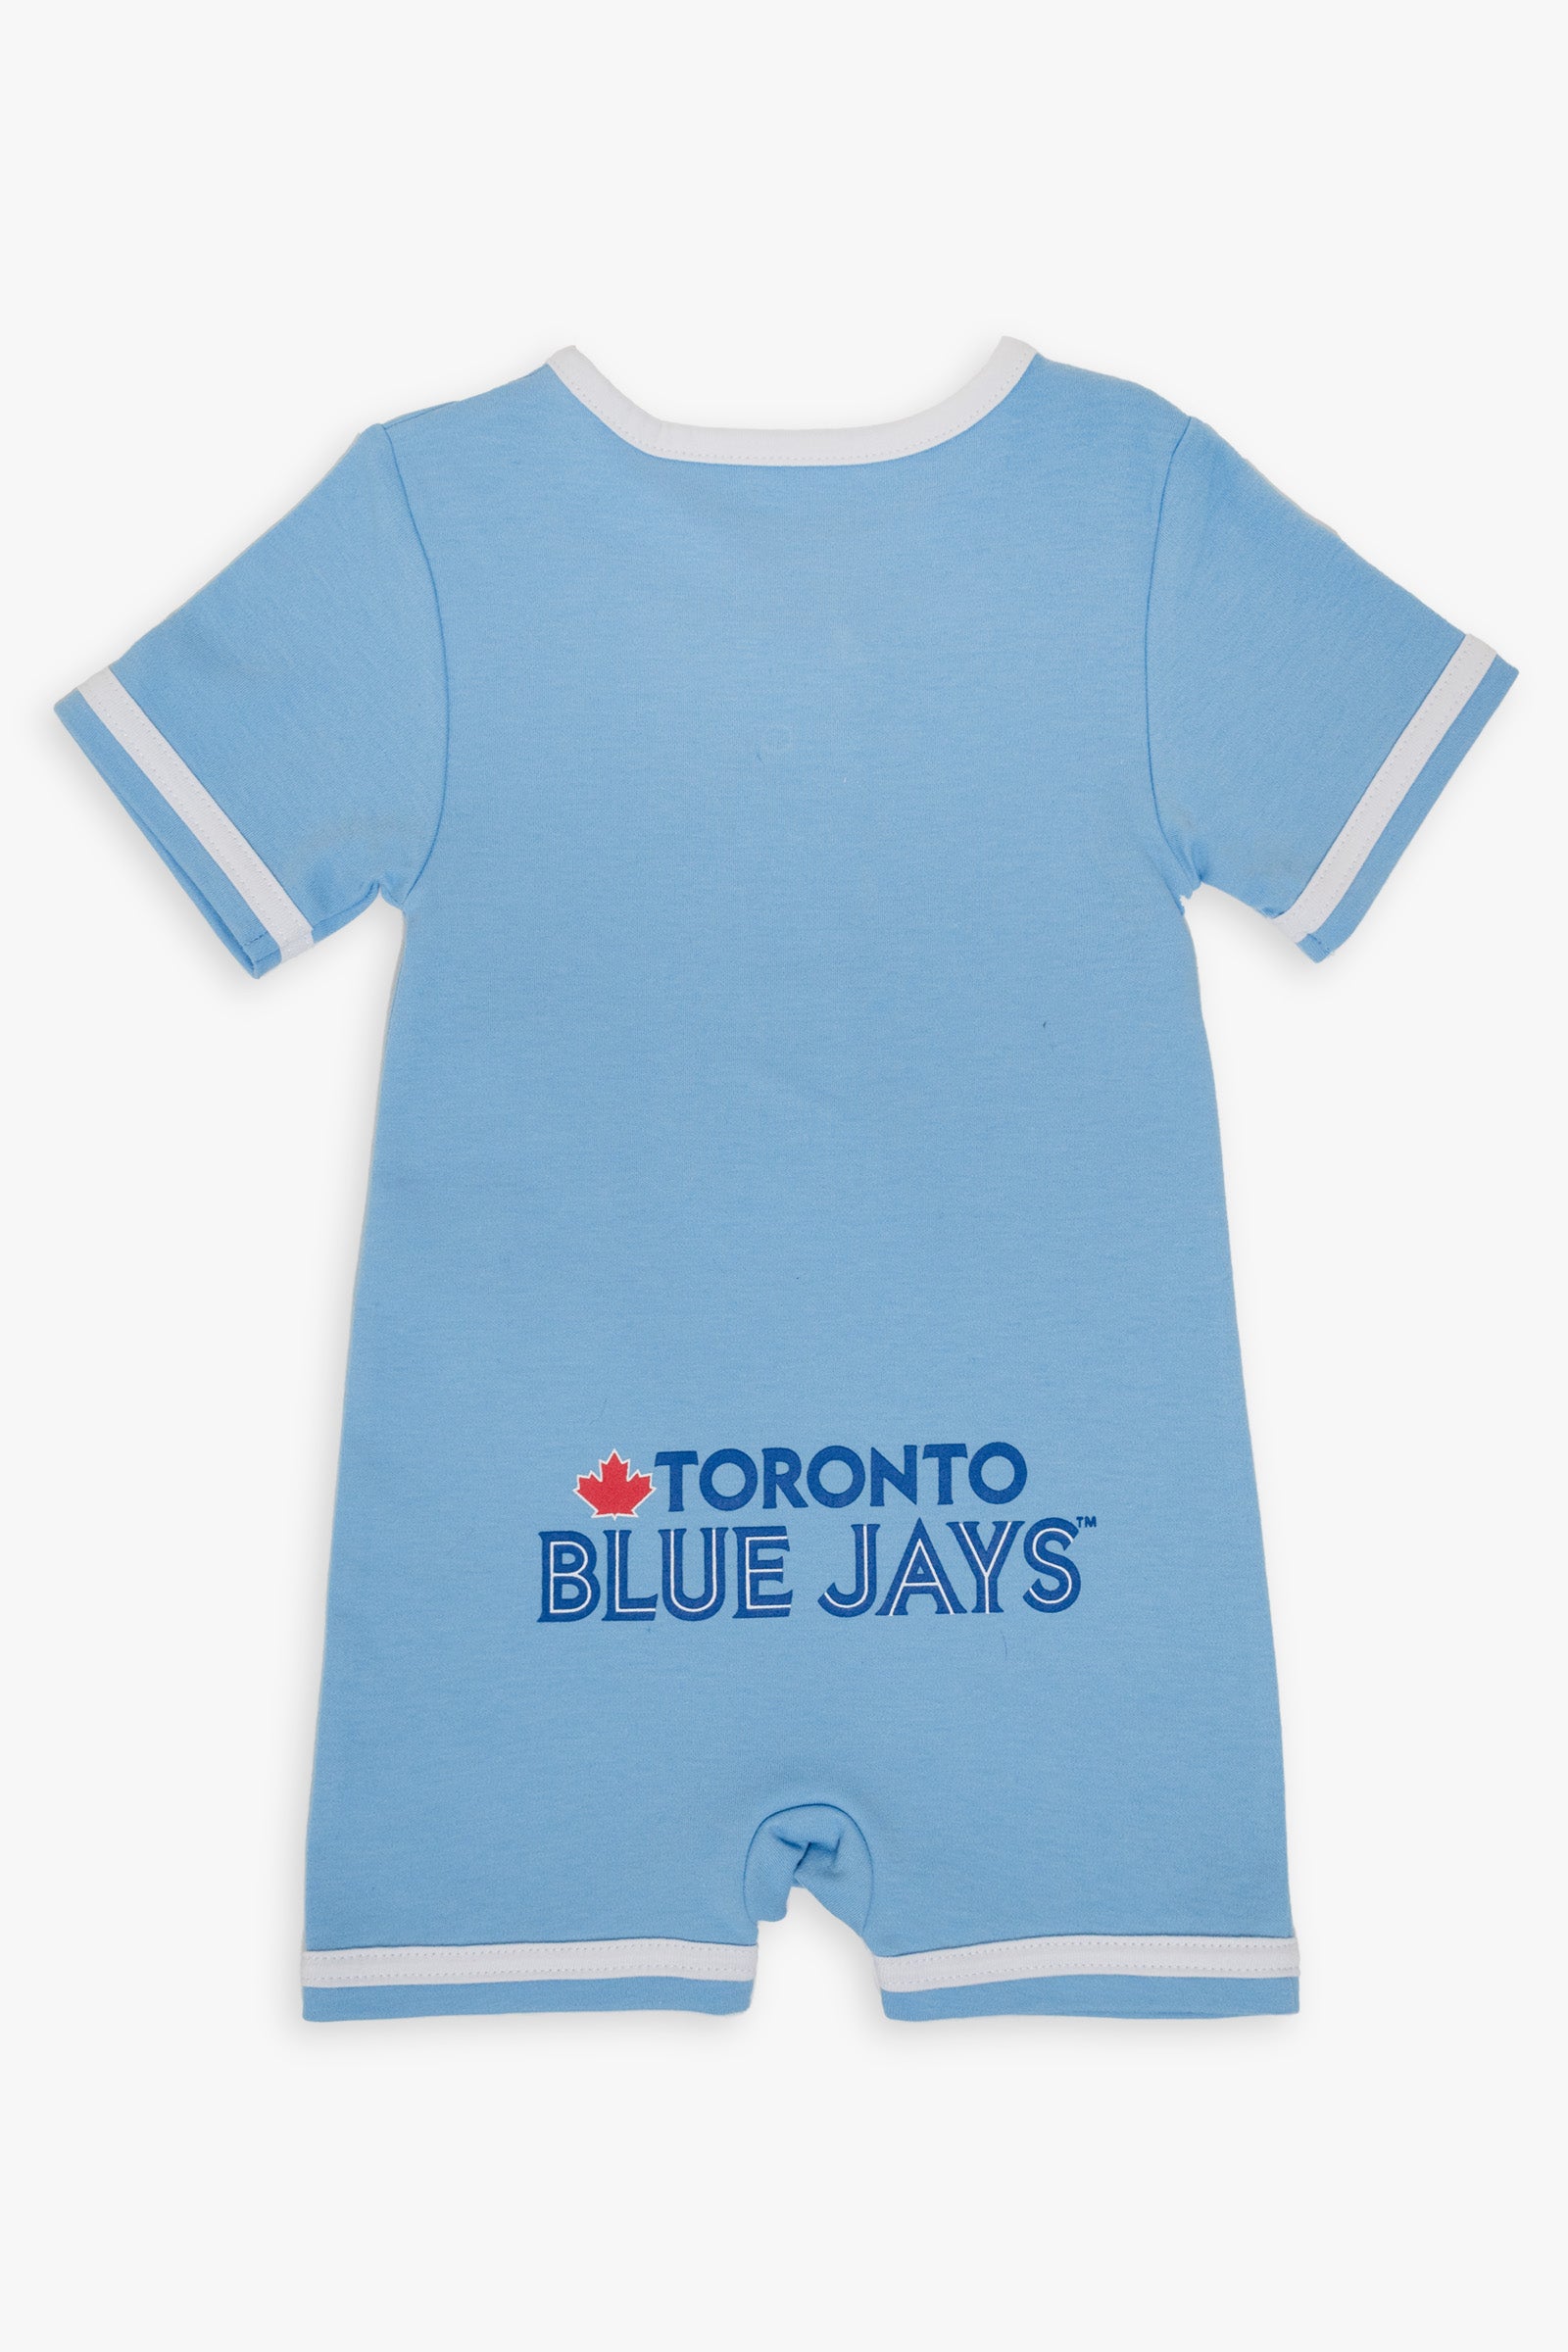 MLB Toronto Blue Jays Black Small Kids Unisex Lounge Pants